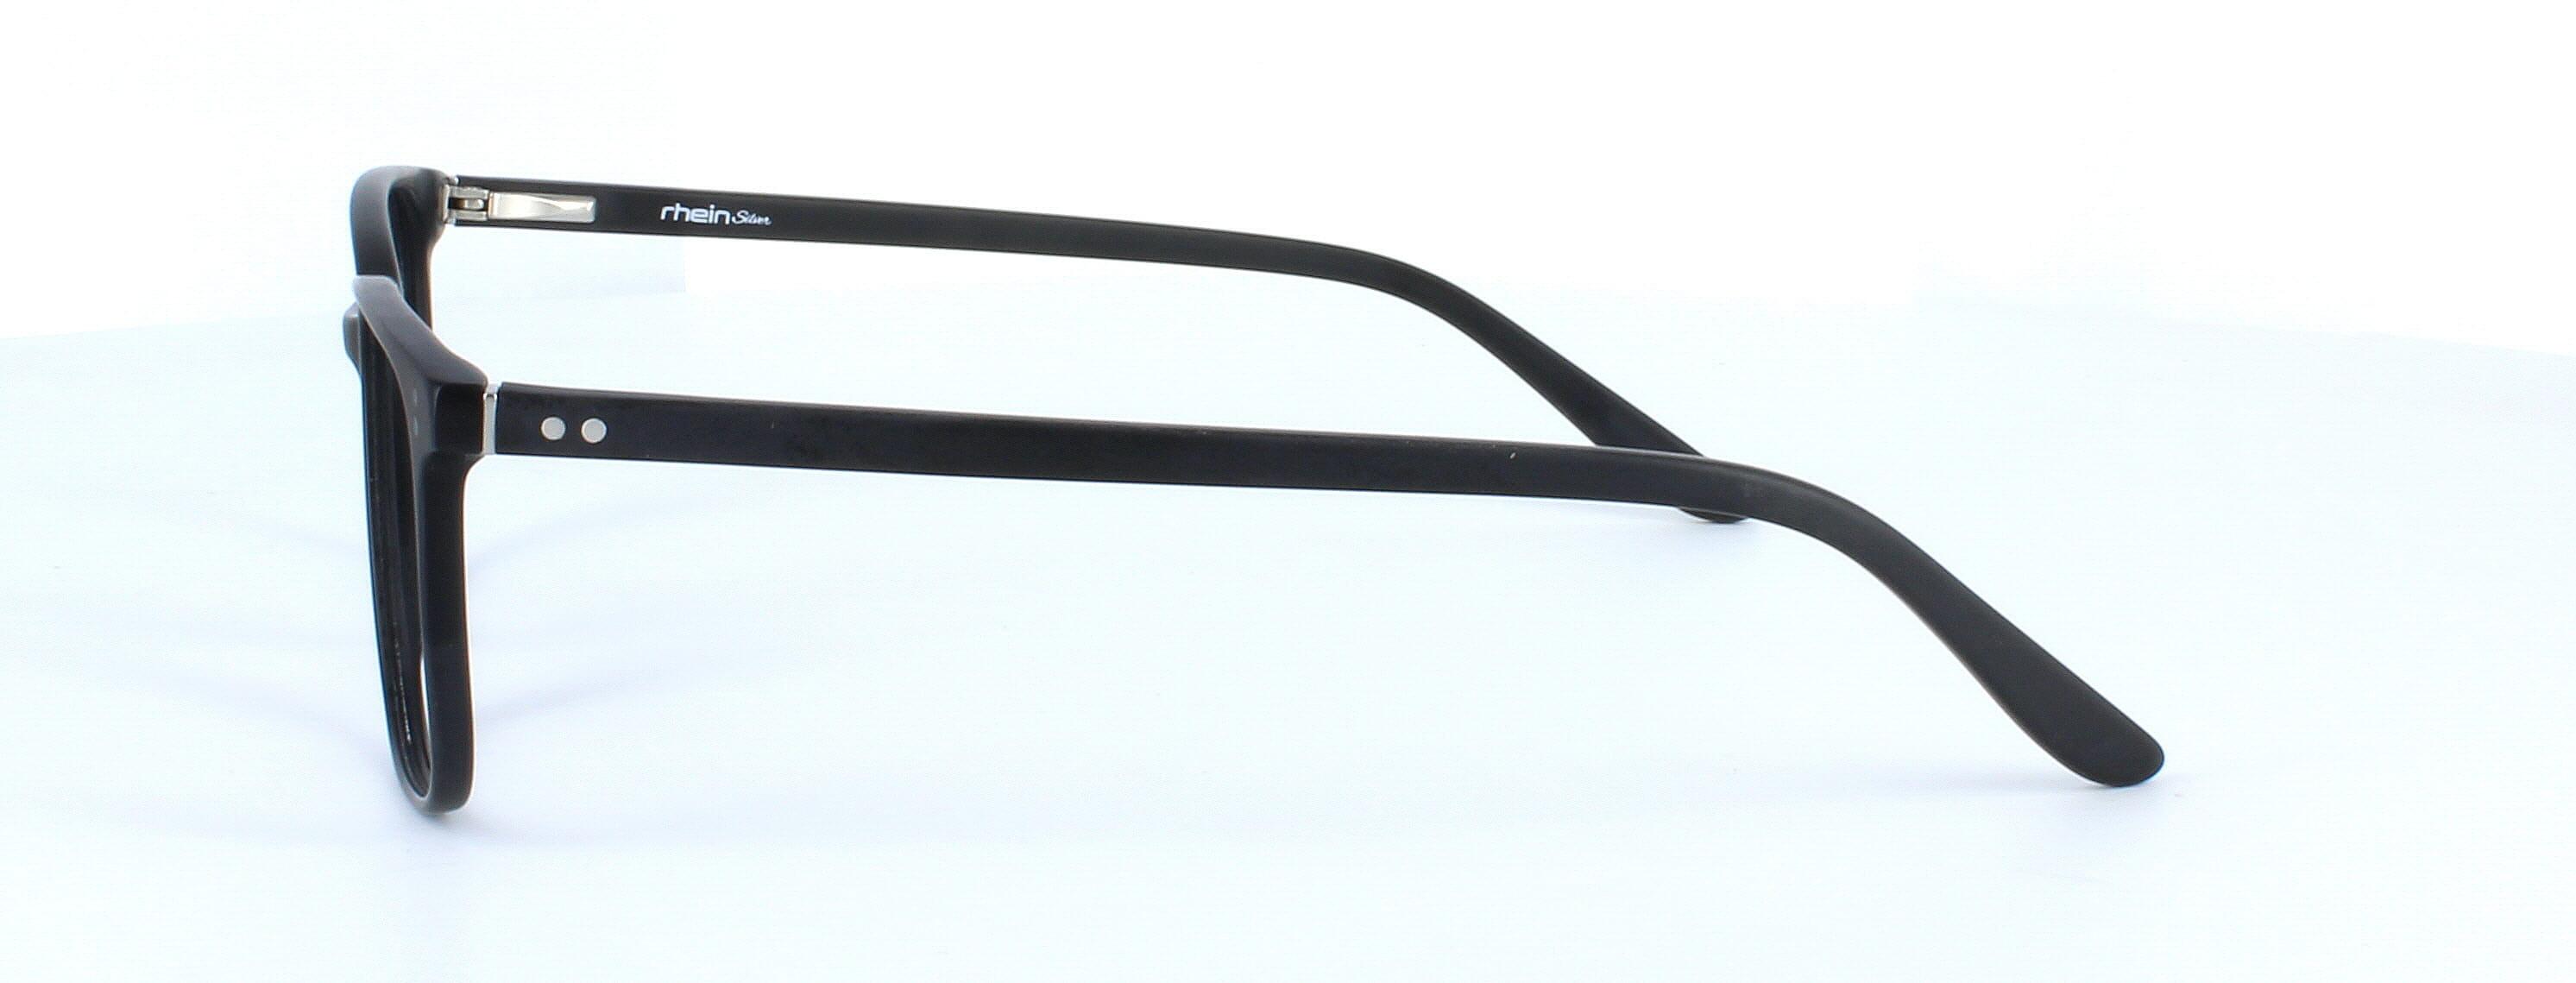 Farrington - unisex plastic glasses frame in matt black with rectangular lens shape and sprung hinge temple - image 2